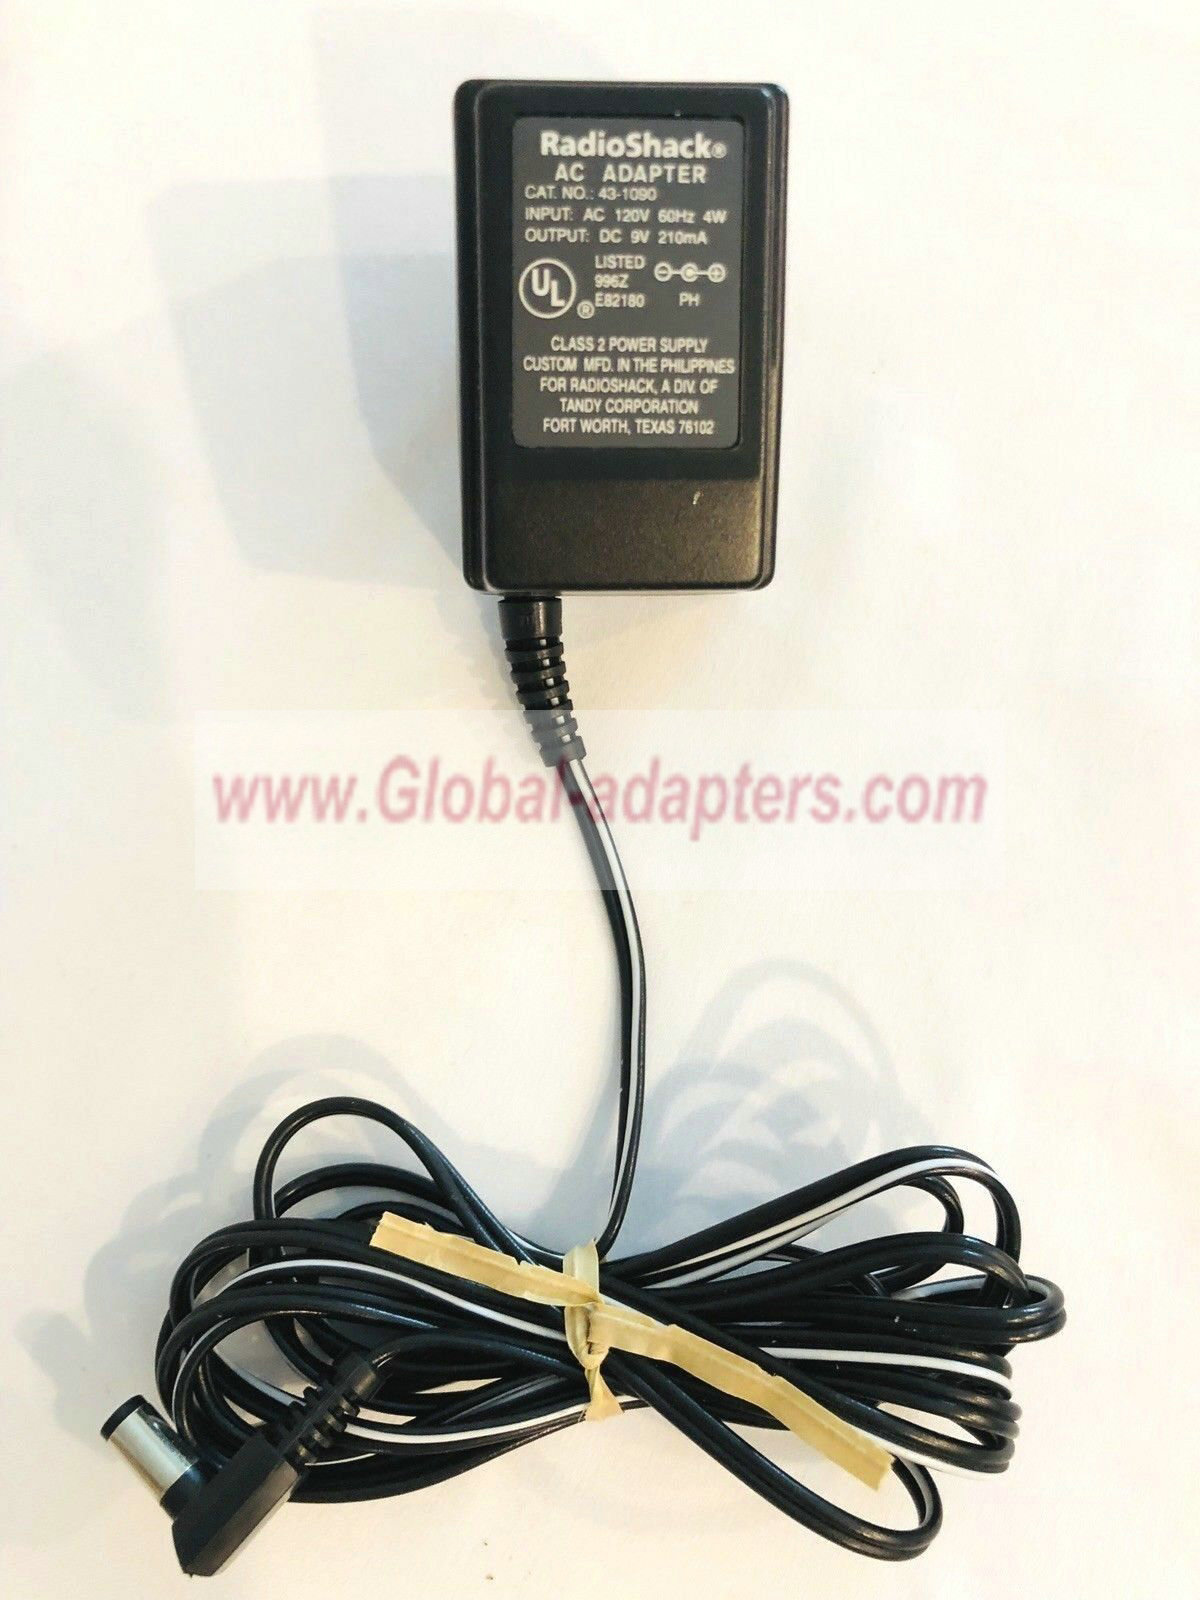 NEW 9V 210mA RadioShack 43-1090 AC DC Power Supply Adapter